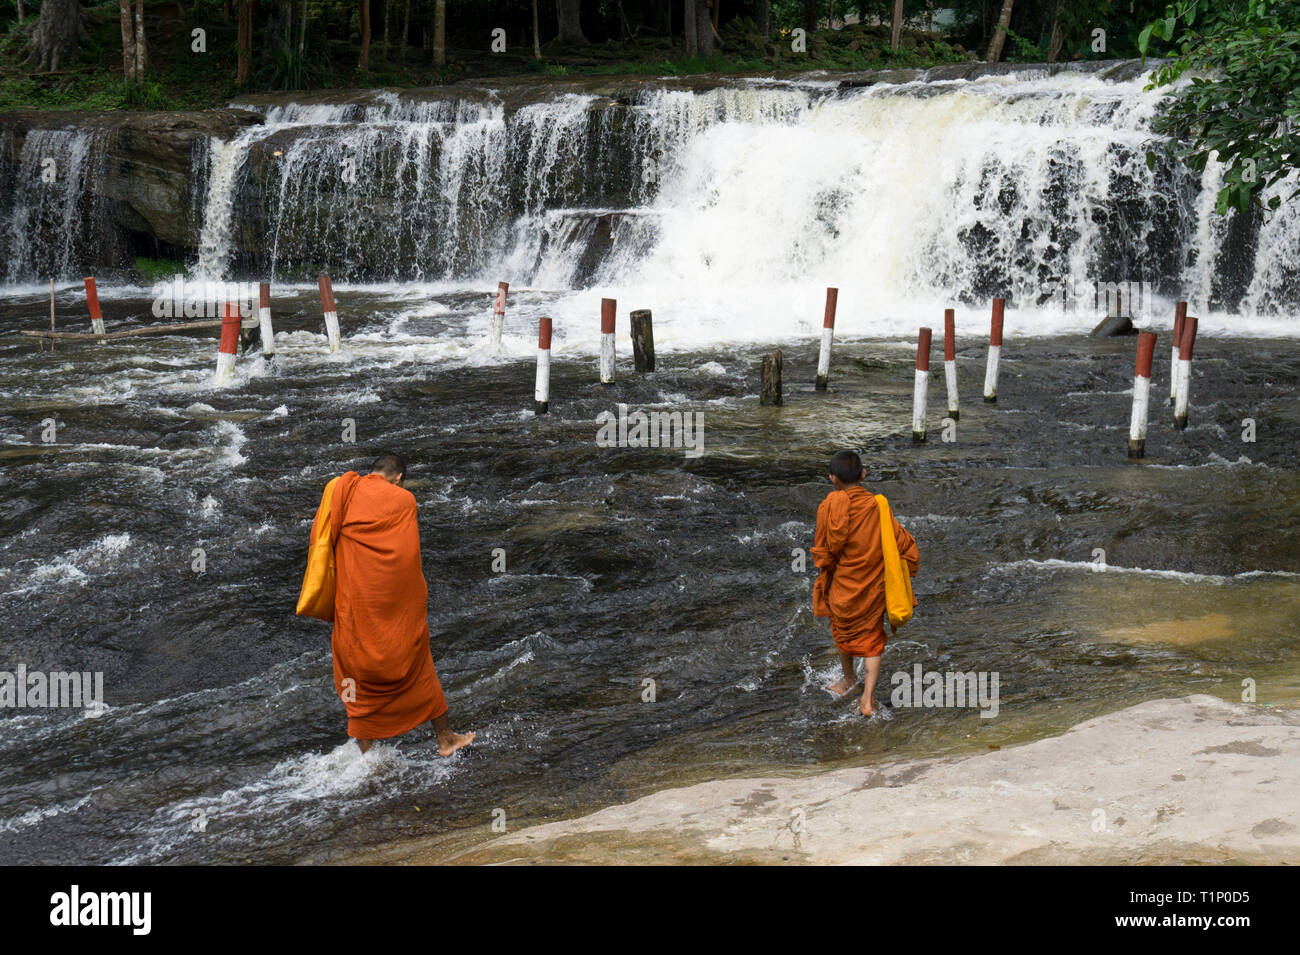 Zwei junge Mönche in orangefarbenen Gewändern ins Wasser mit einem Wasserfall im Hintergrund gekleidet Stockfoto